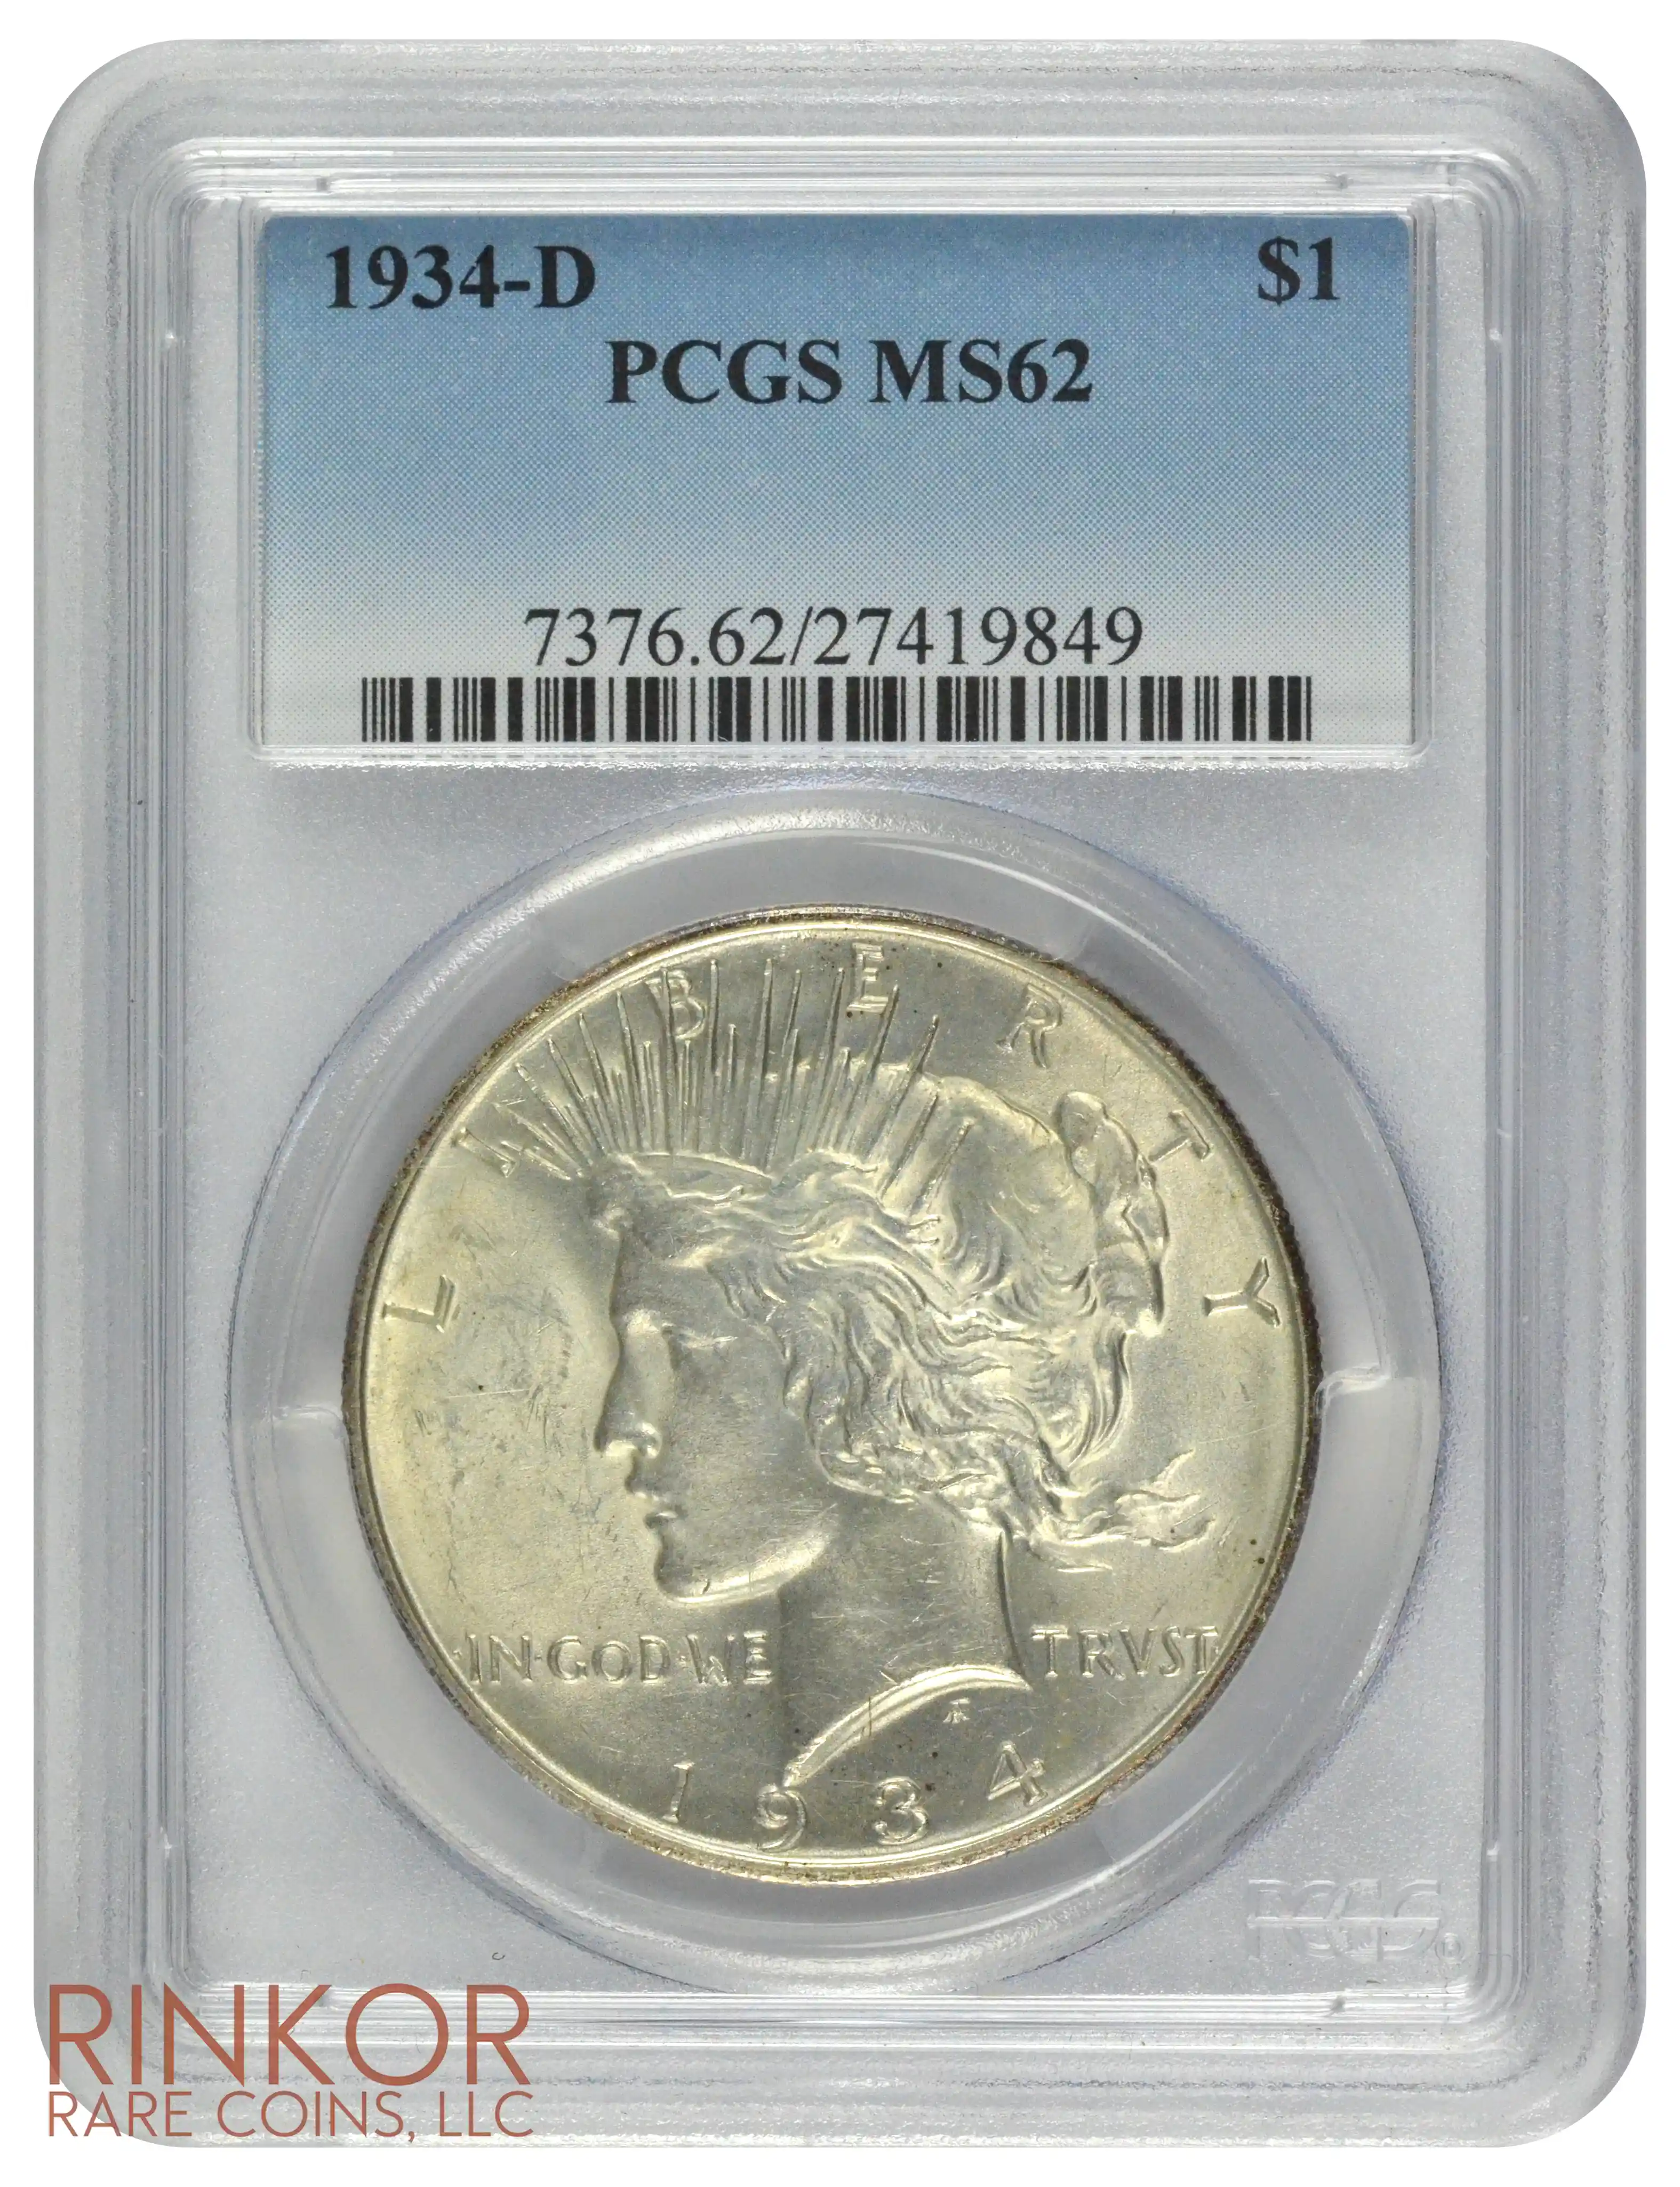 1934-D $1 PCGS MS 62